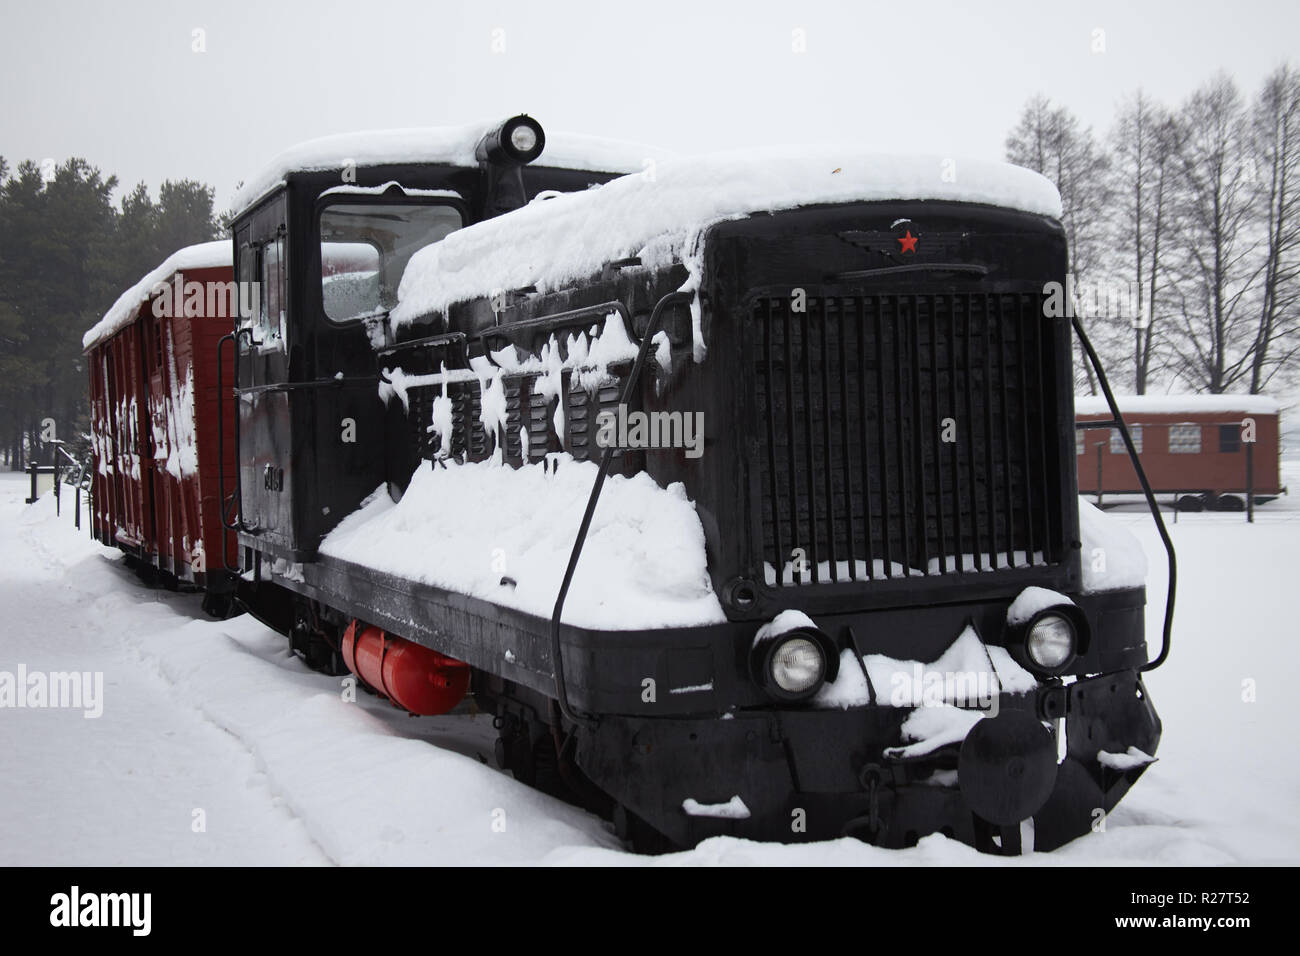 DRUSKININKAI, LITHUANIA - JAN 07, 2011: TU4 Soviet locomotive at Grutas Park (Gruto parkas), a sculpture garden of Soviet-era statues and an expositio Stock Photo